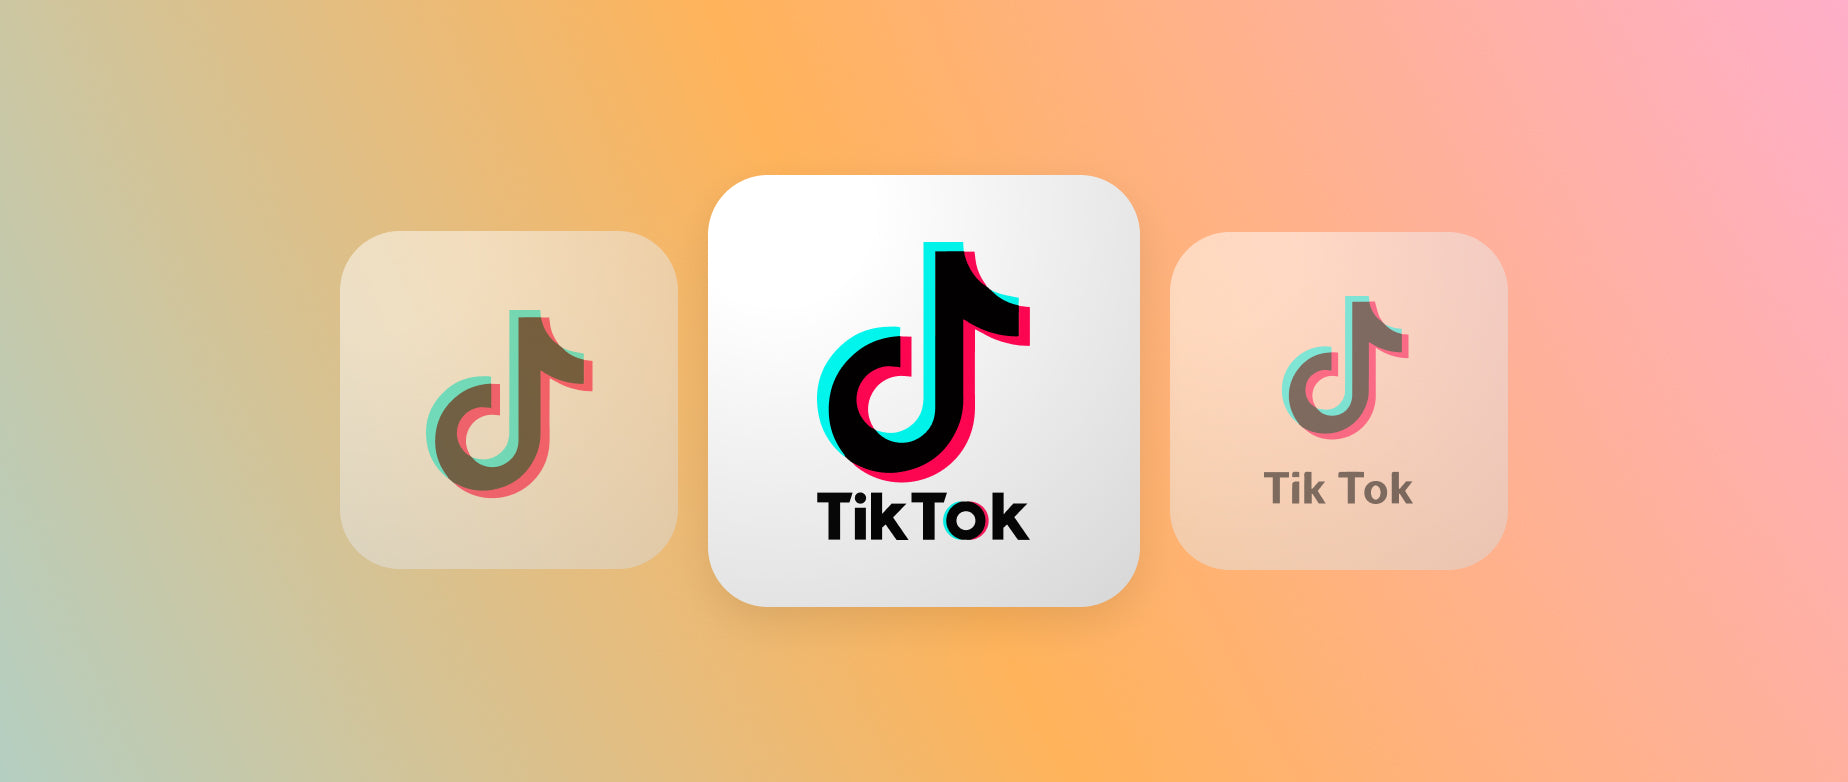 Three tiktok logo icons on a gradient background